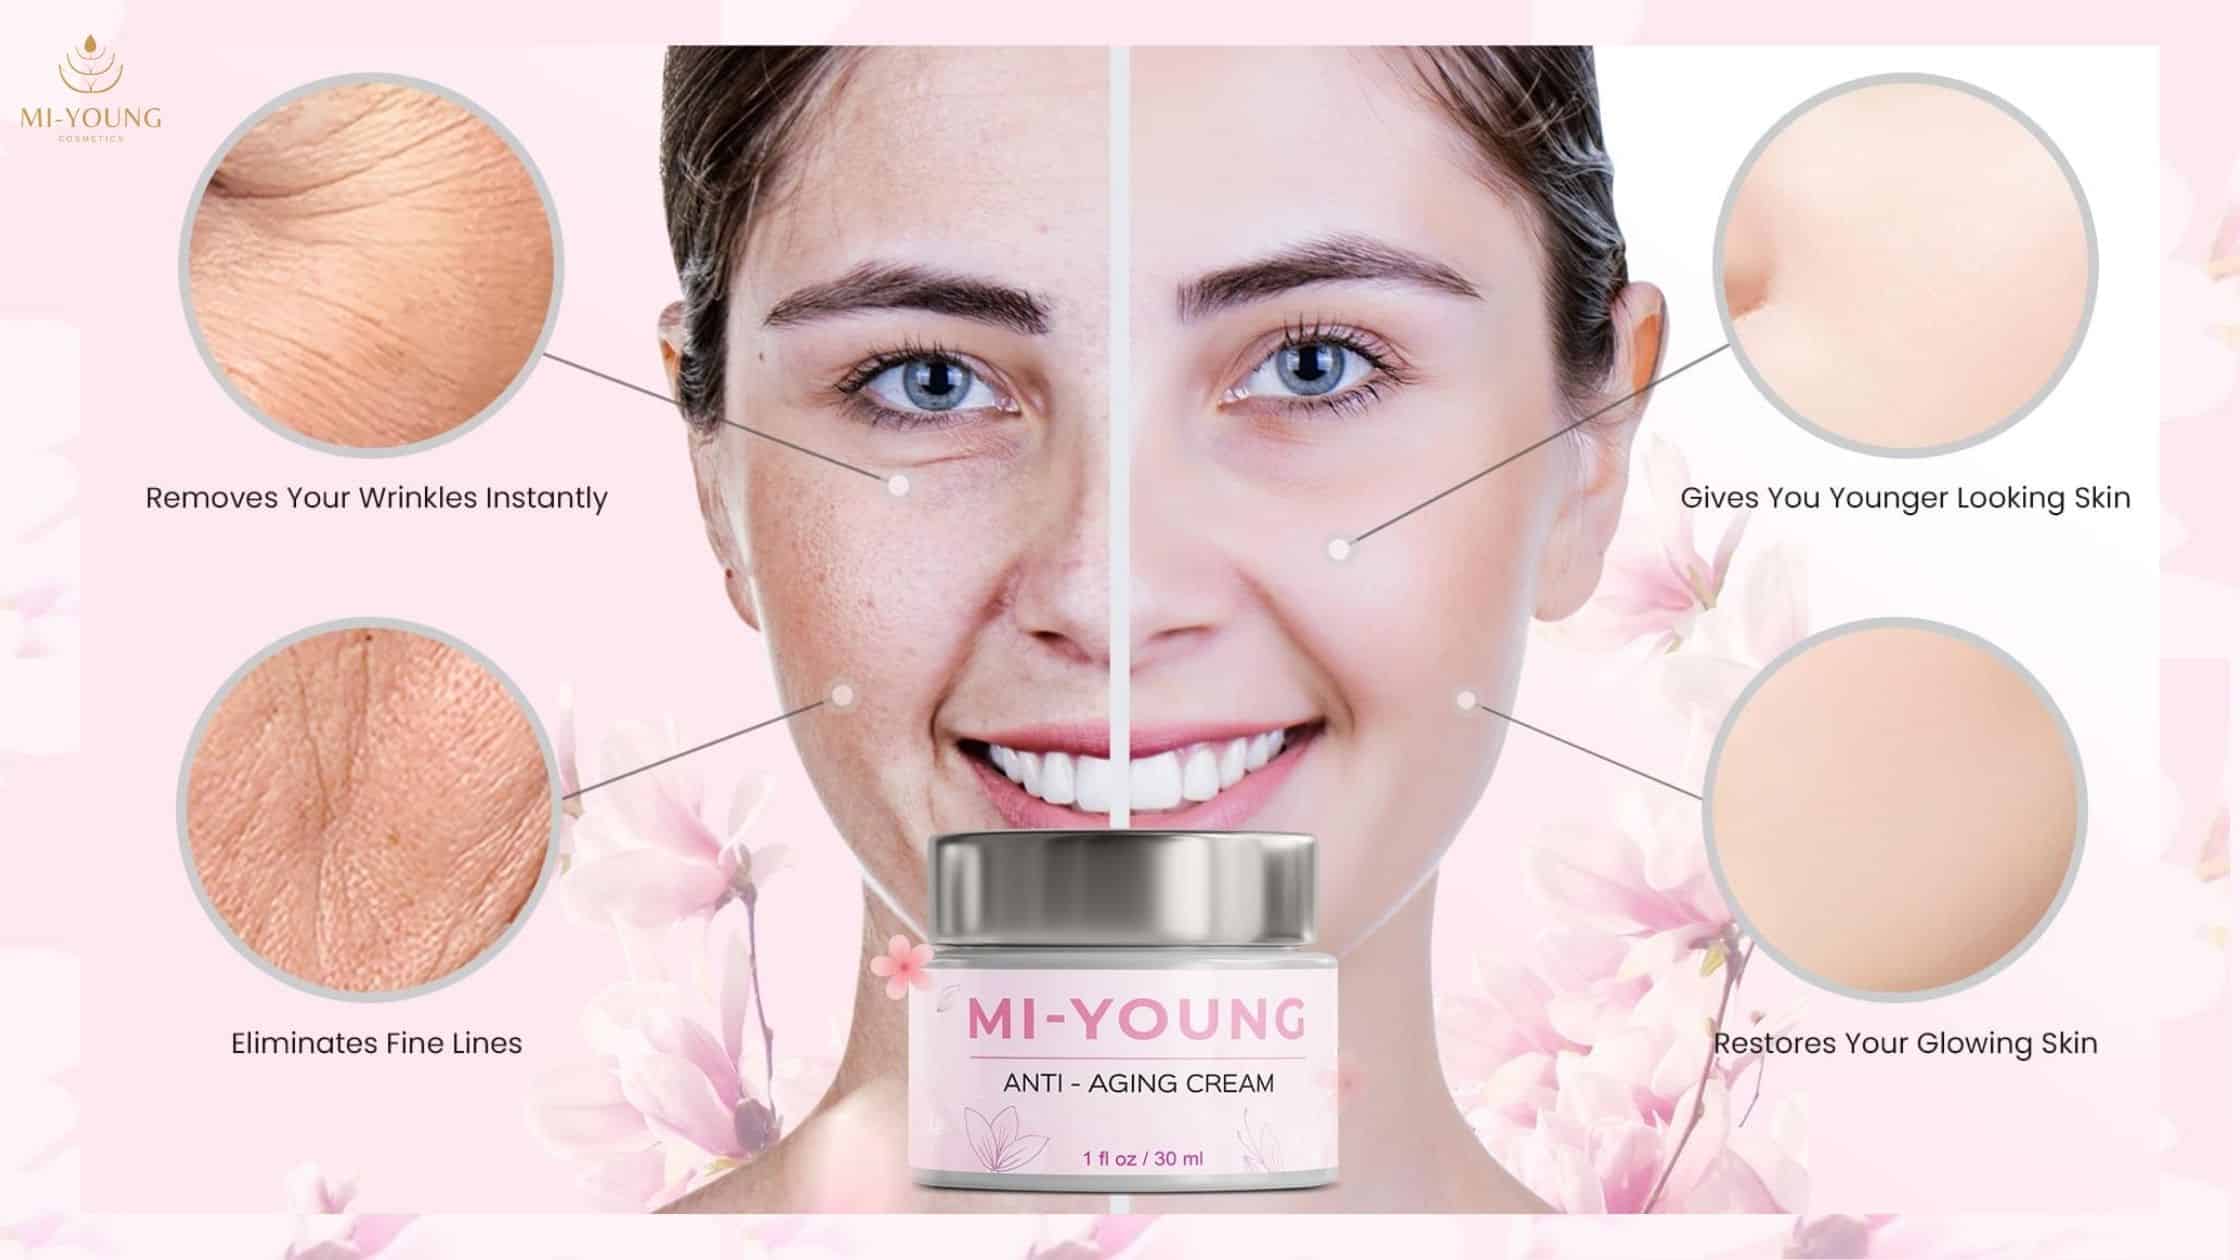 Mi-Young Anti-Aging Cream Working